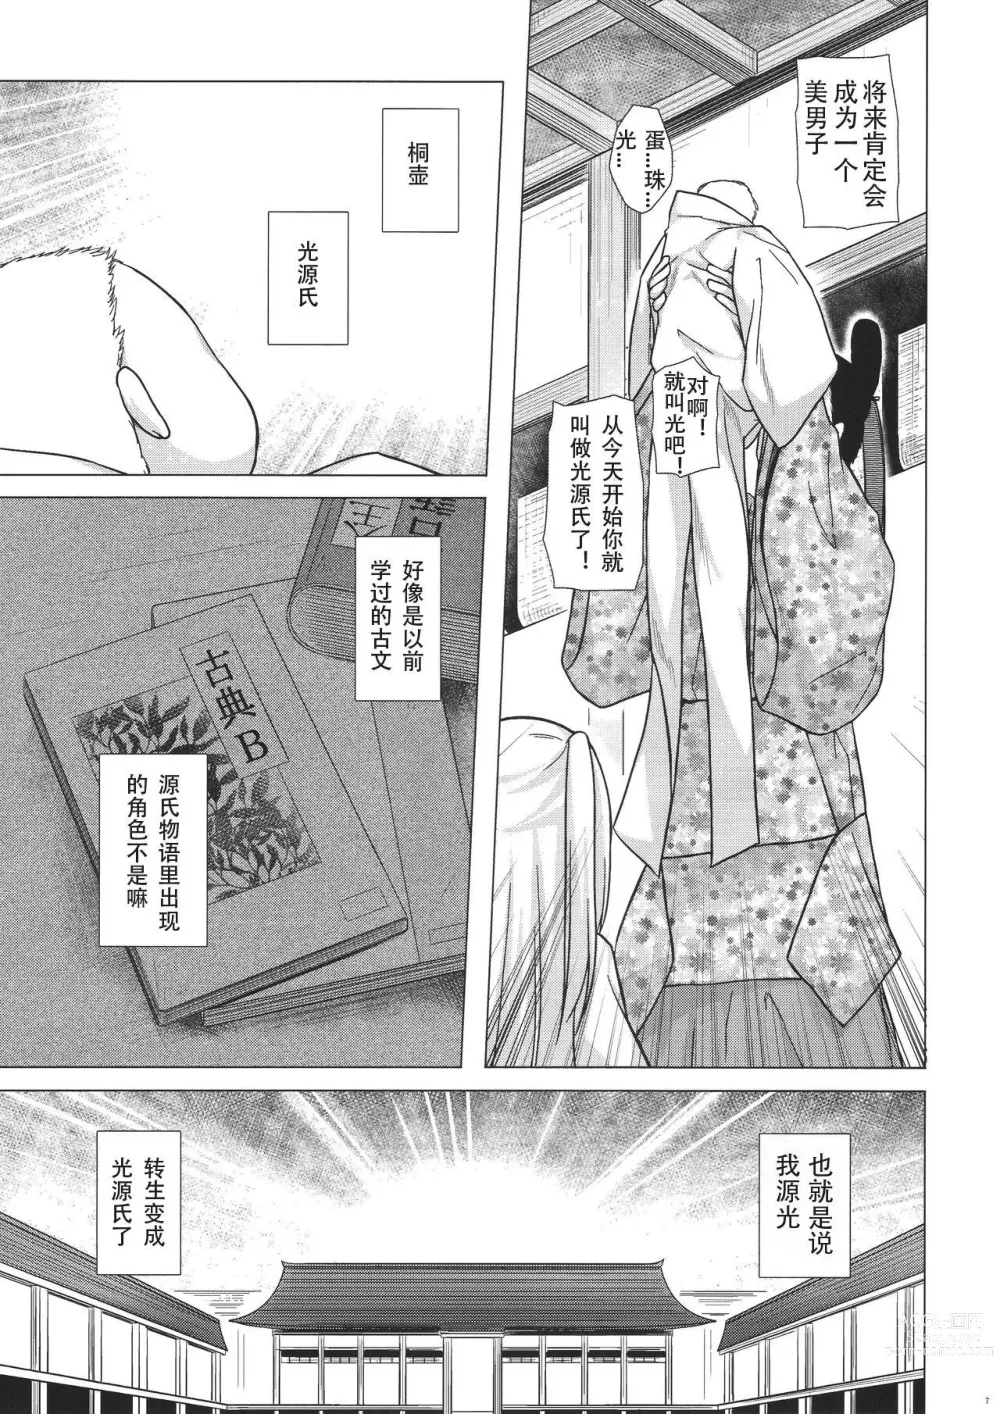 Page 6 of doujinshi yukino minato collection